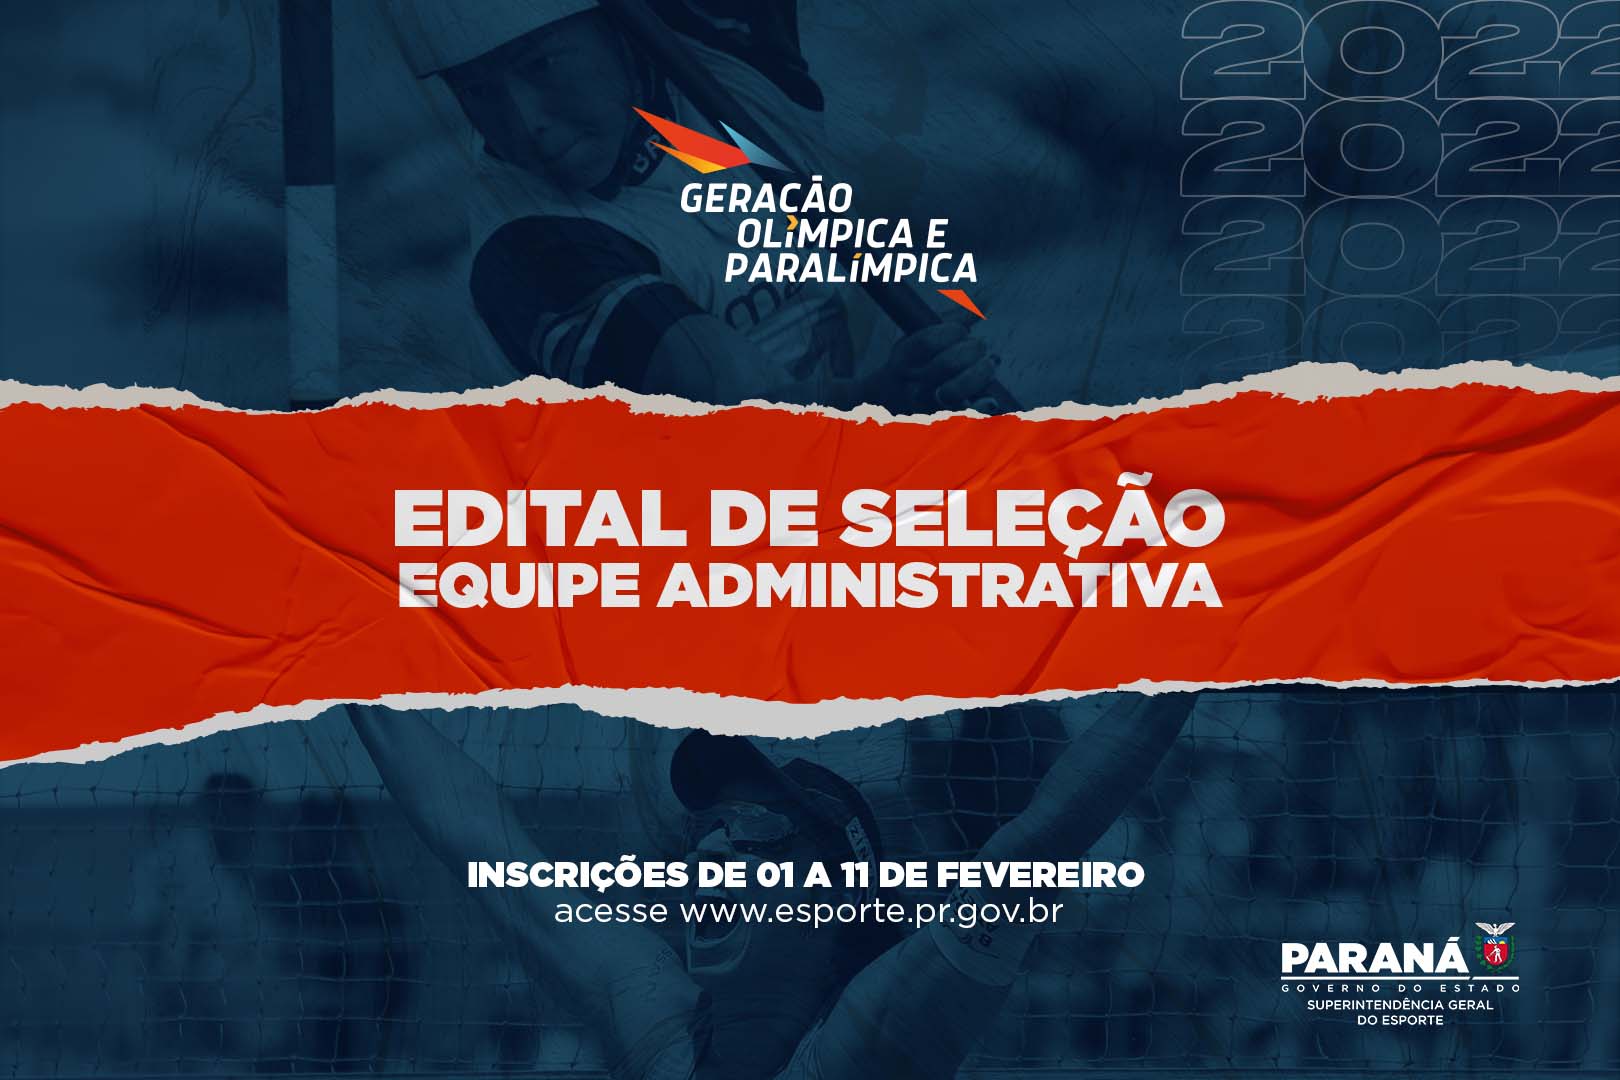 Geração Olímpica e Paralímpica abre edital para seleção de equipe administrativa